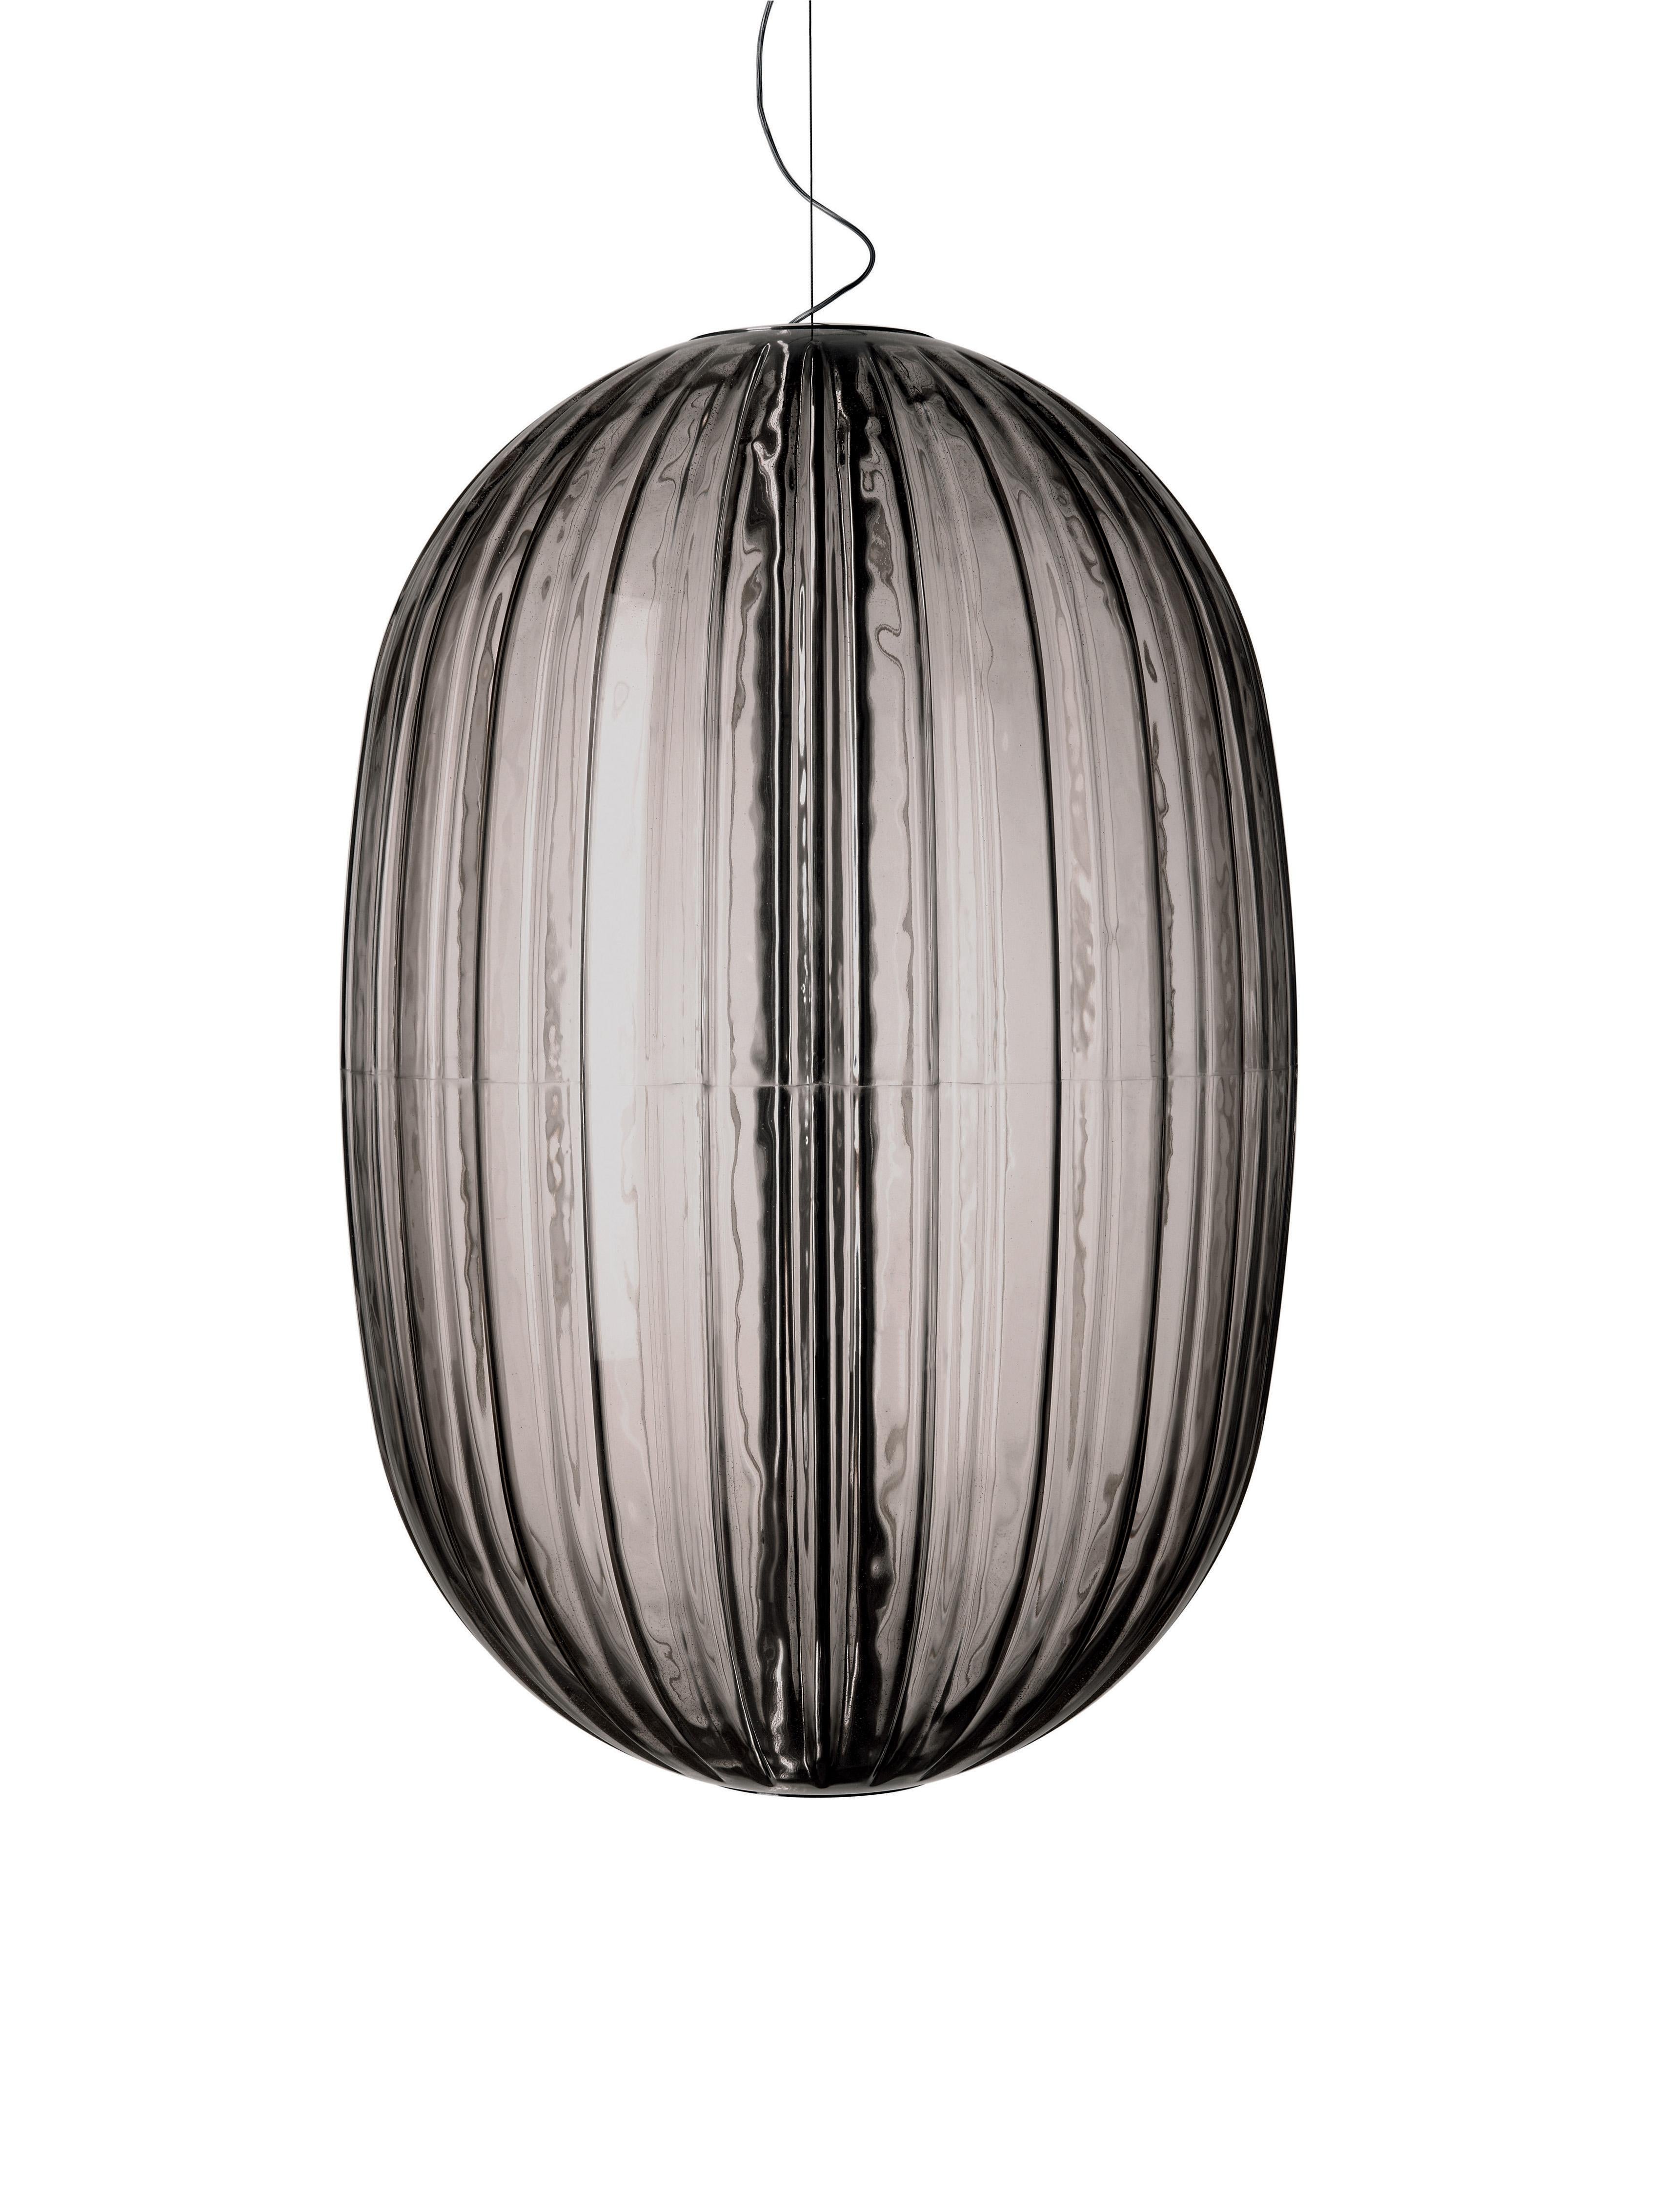 Italian Foscarini Plass Grande Suspension Lamp in Grey by Luca Nichetto For Sale